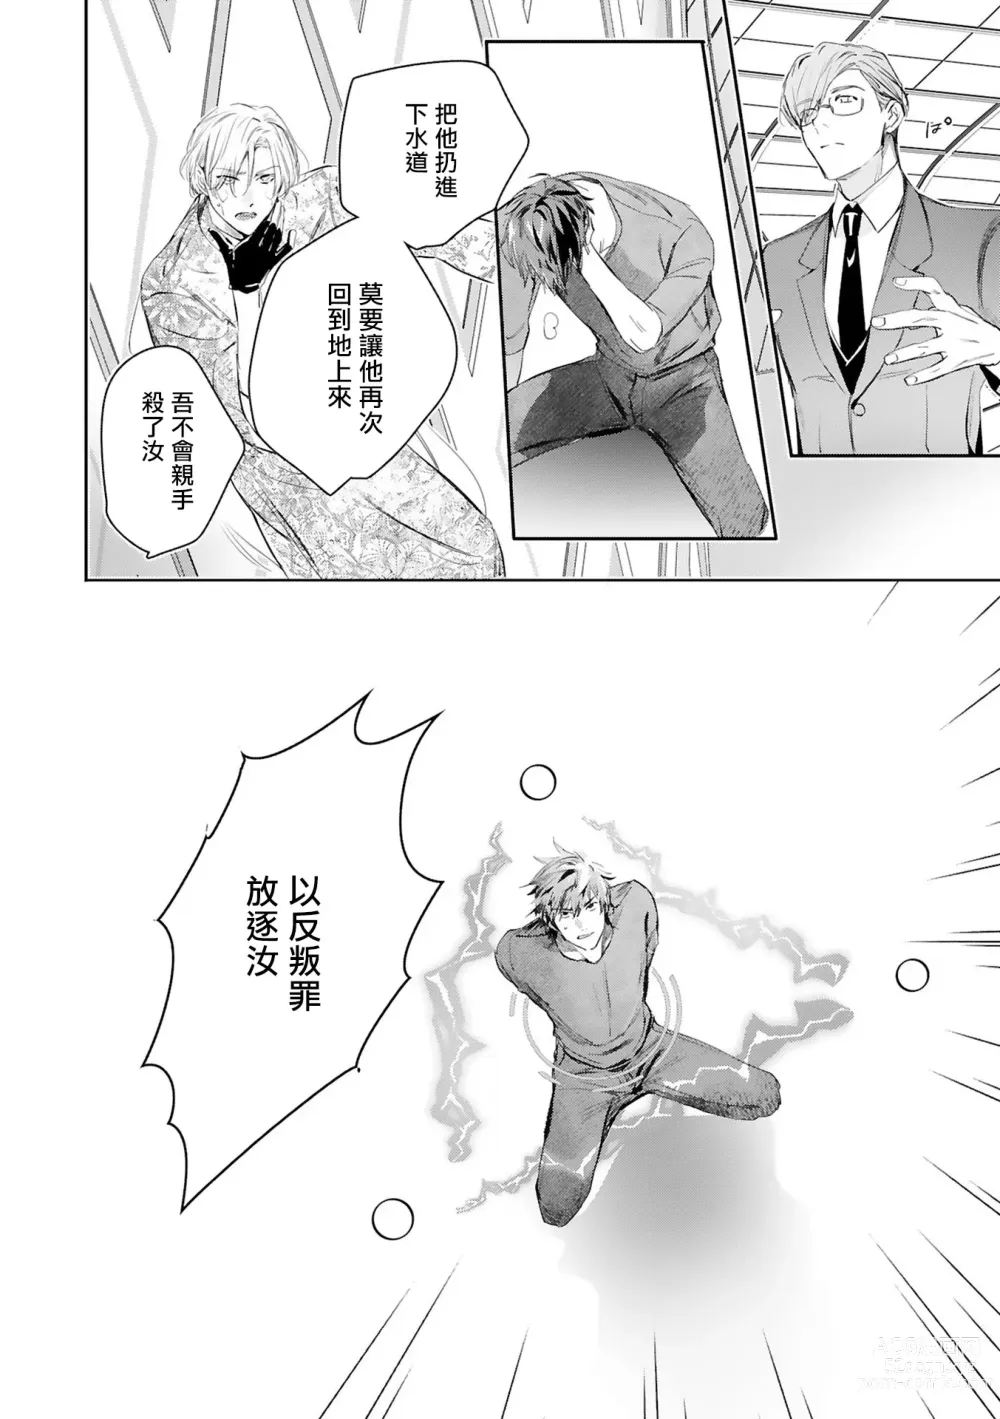 Page 437 of manga 末世青鸟 Ch. 4-10 + 特典 + 11-14